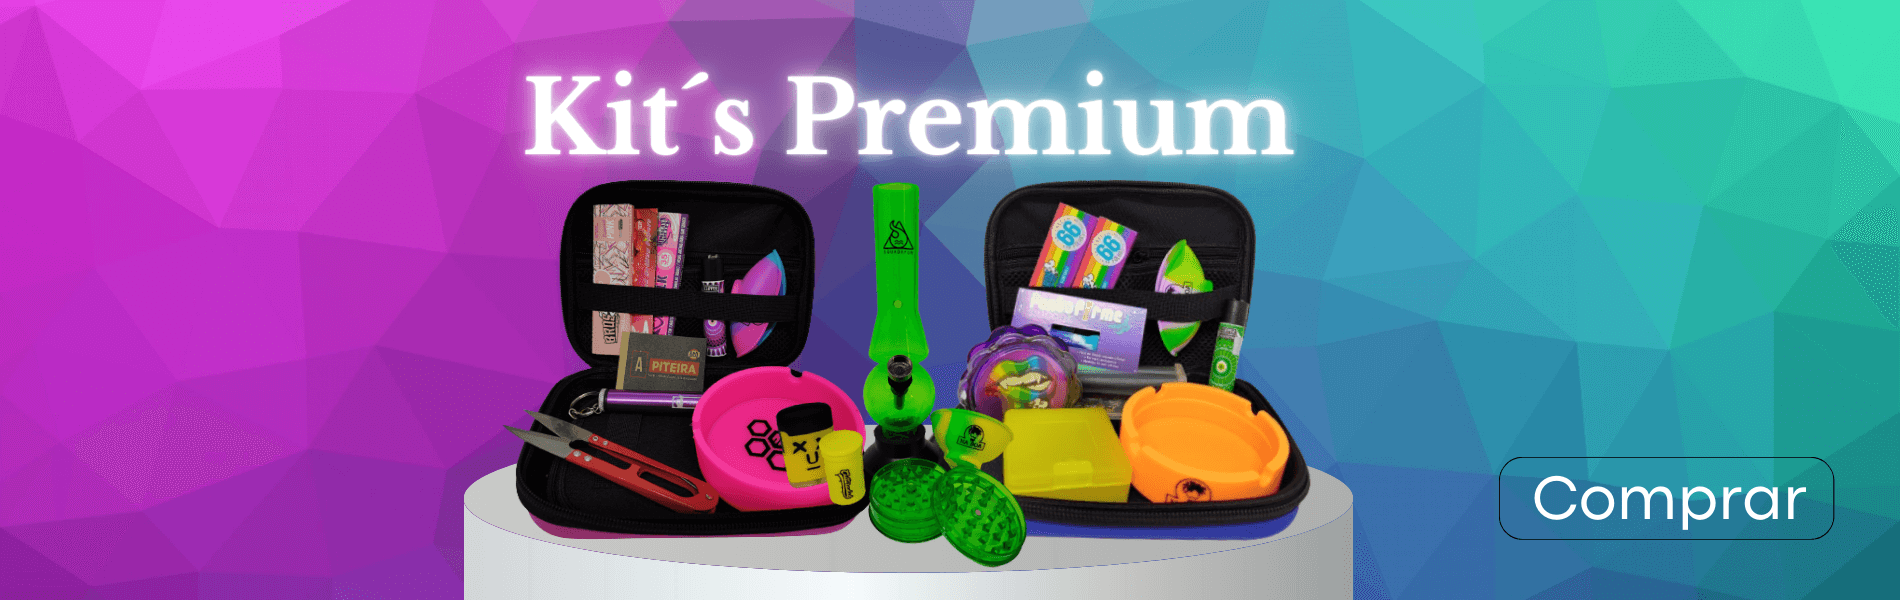 Kits Premium